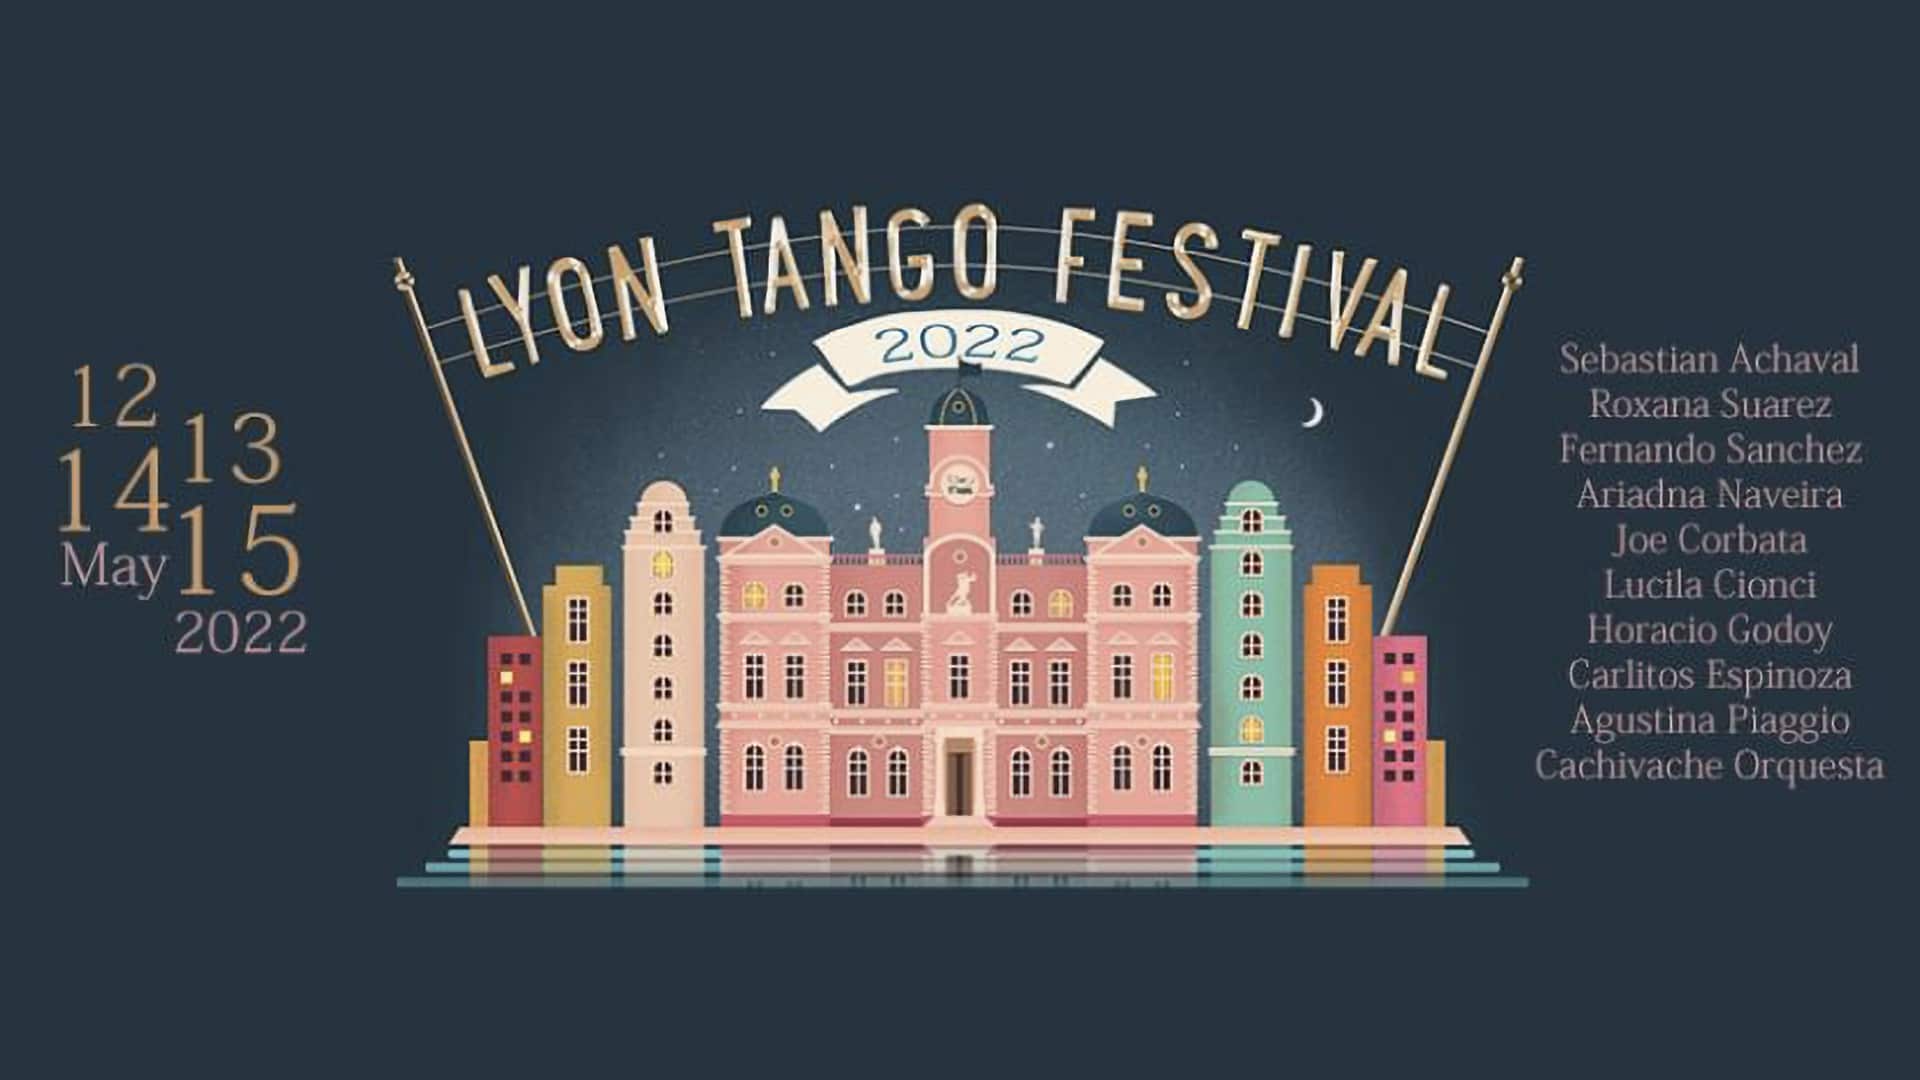 Lyon Tango Festival 2022 event picture